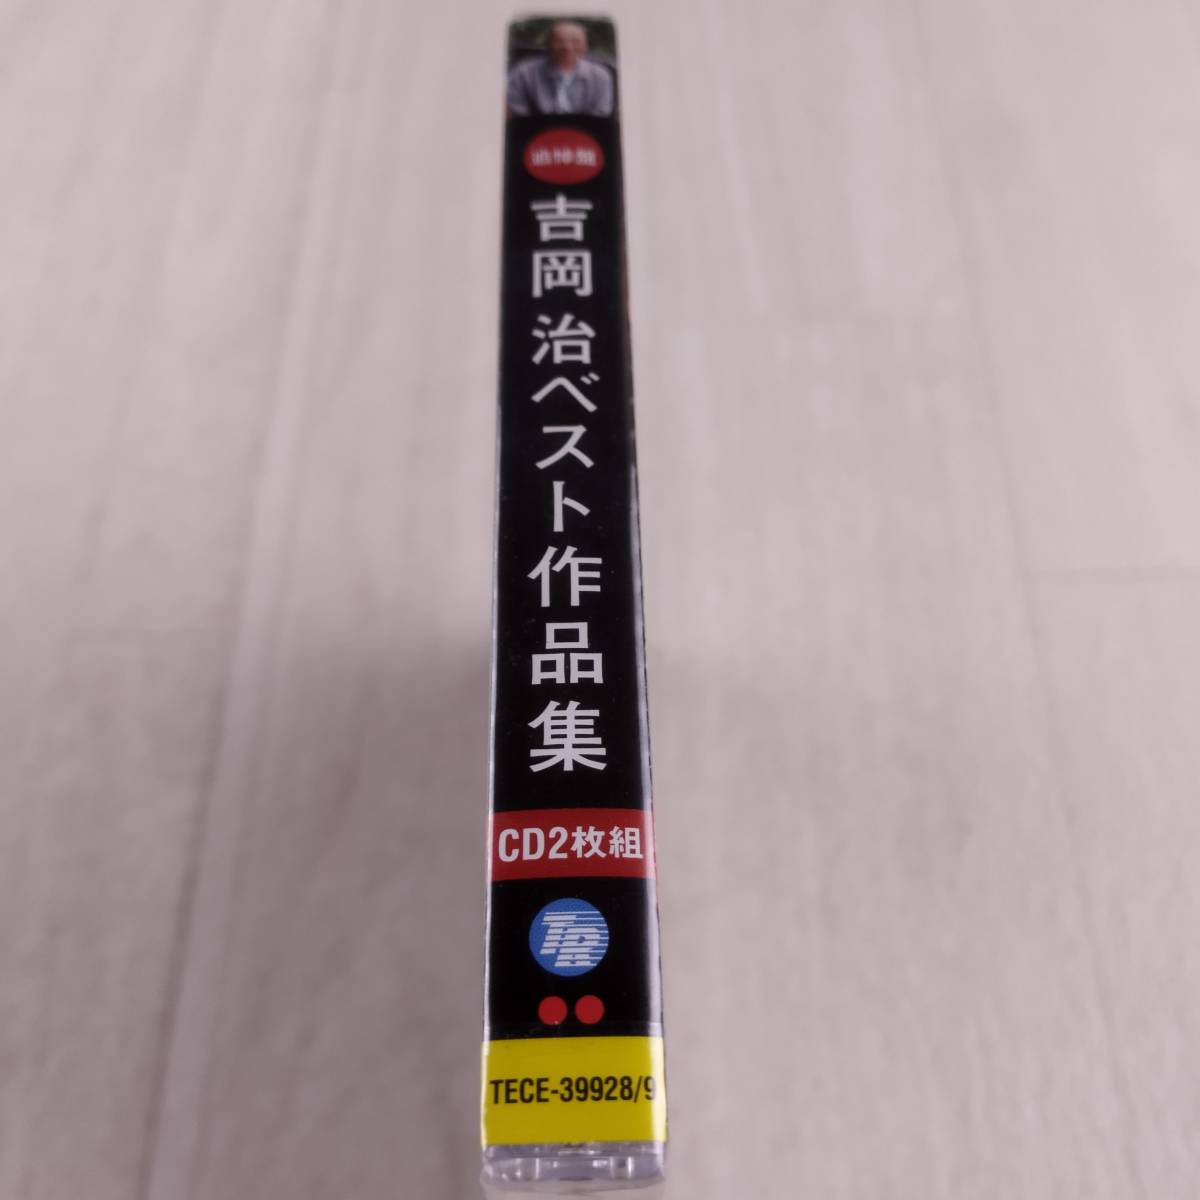 1MC9 CD 未開封 追悼盤 吉岡治ベスト作品集 _画像6